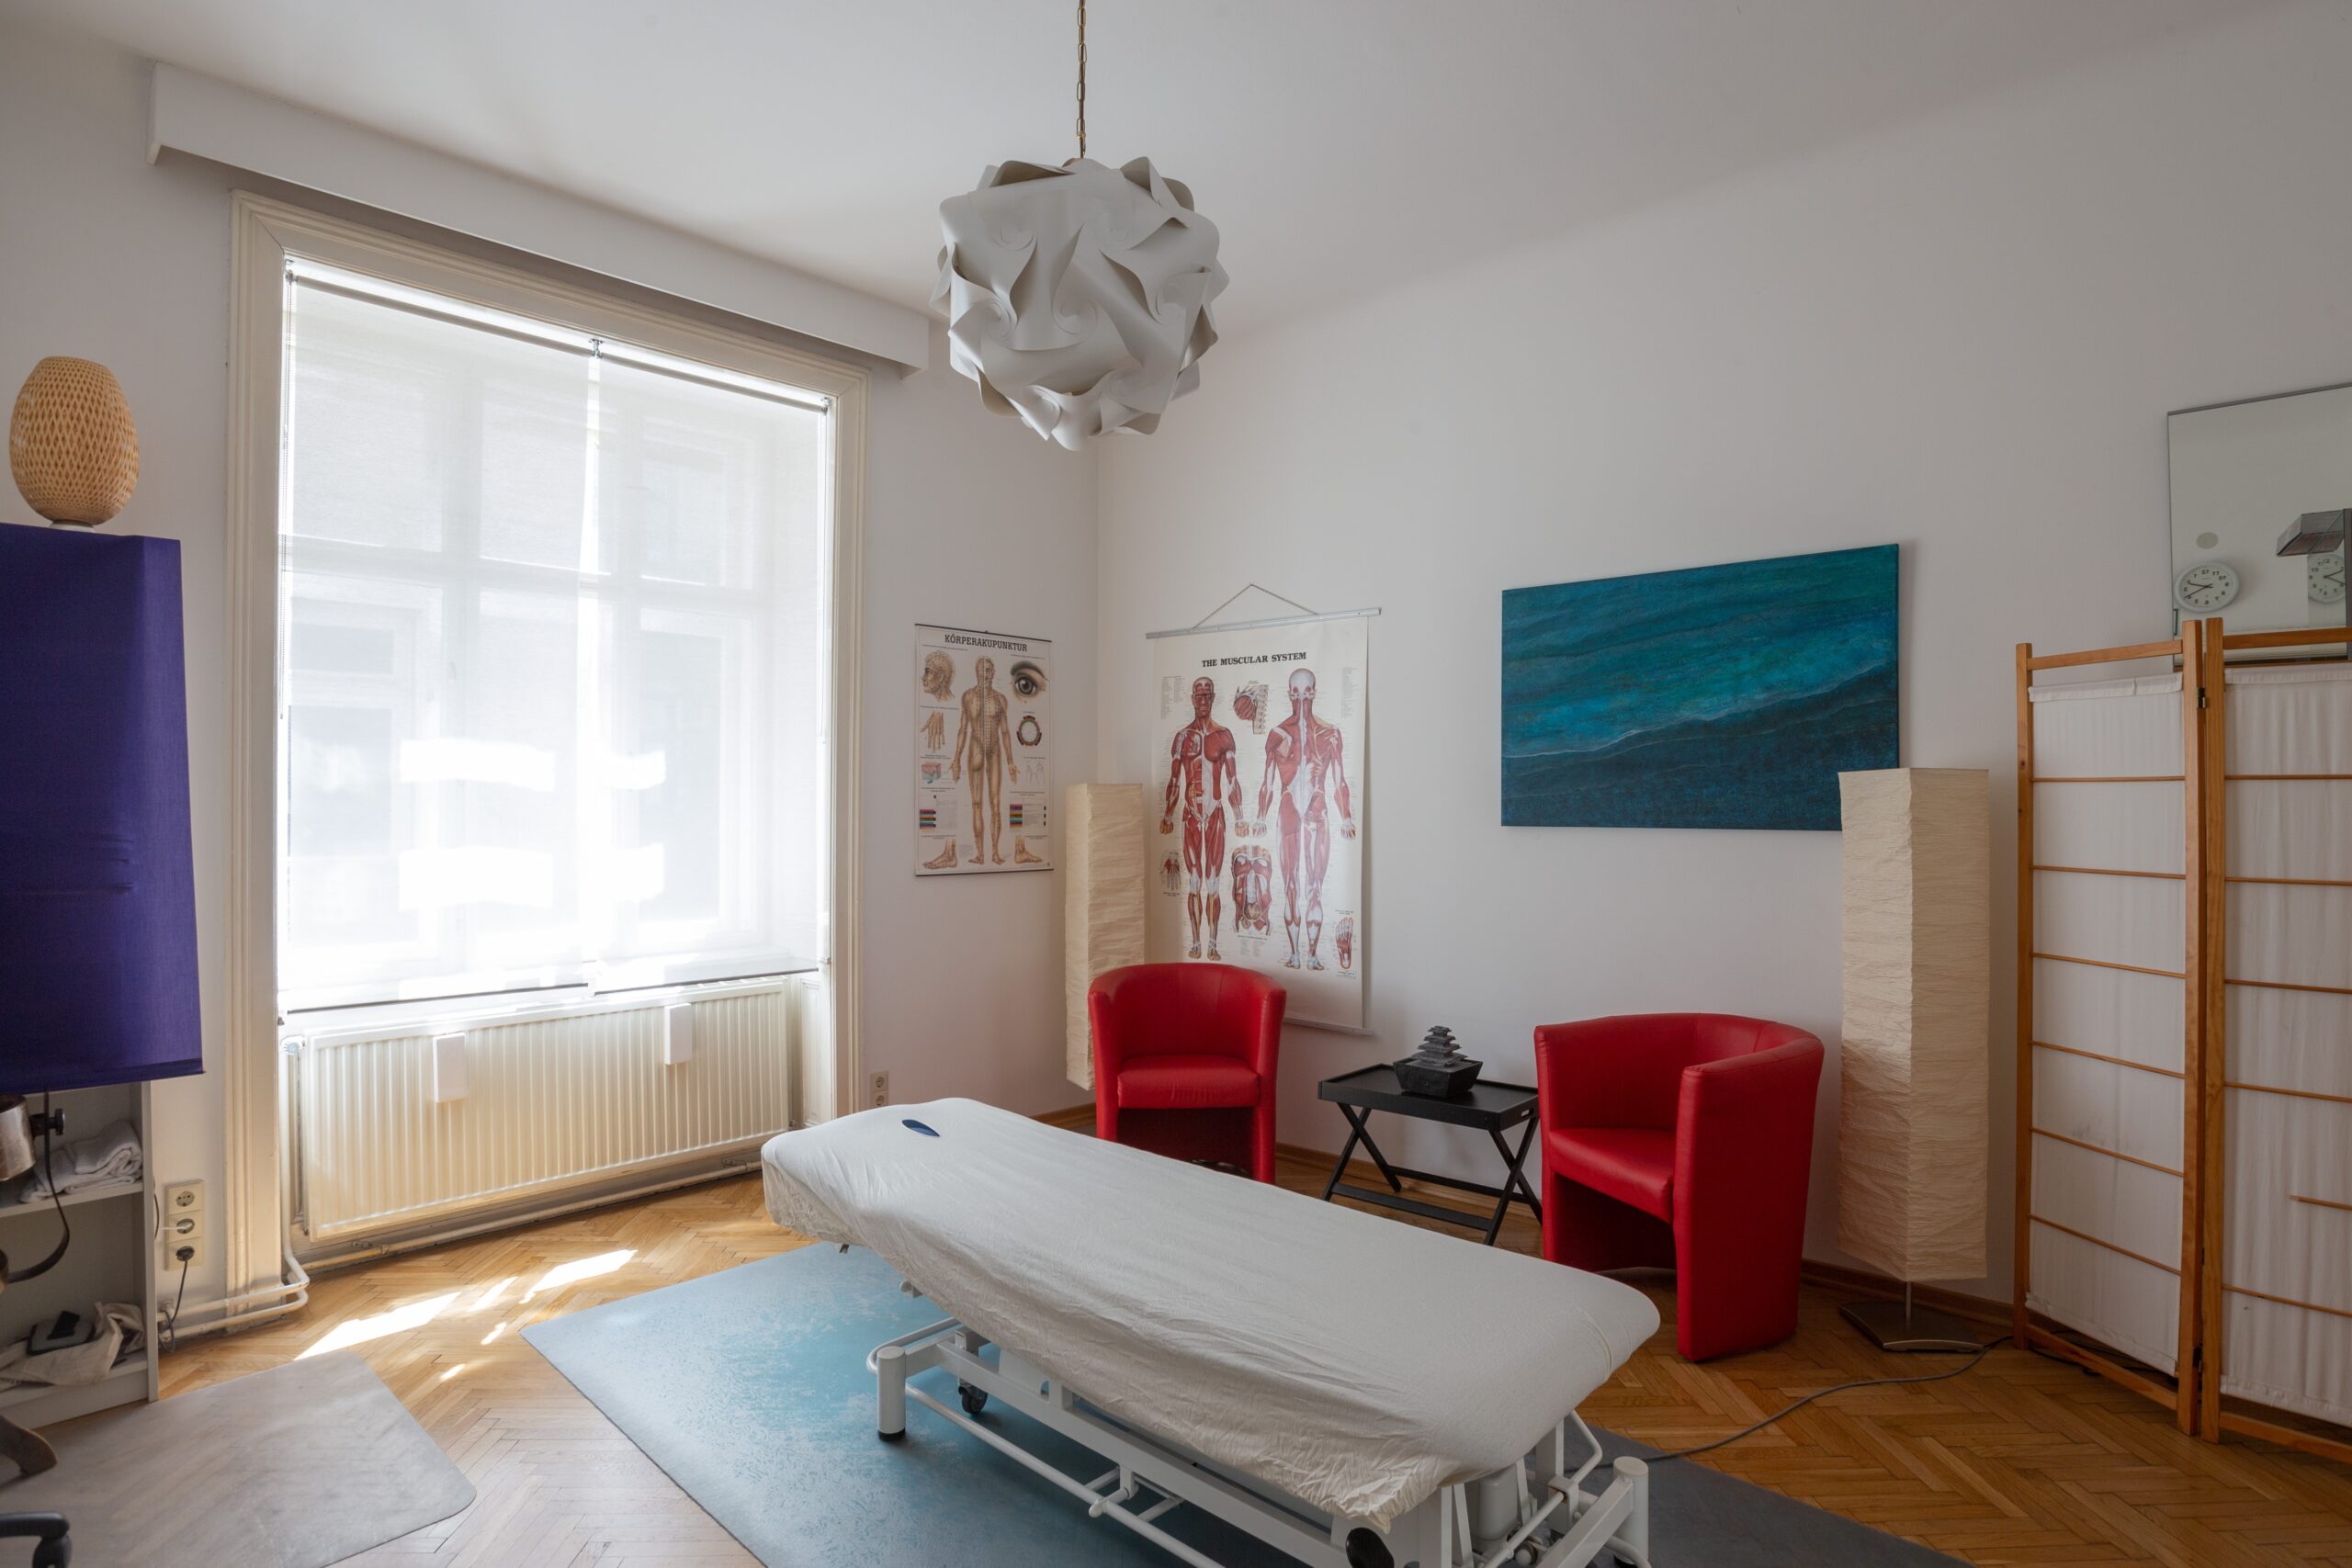 Modern eingerichtete Massage Praxis mit höhenverstellbarer Massageliege, Anatomie Bilder und Sonnenschein durch das Fenster